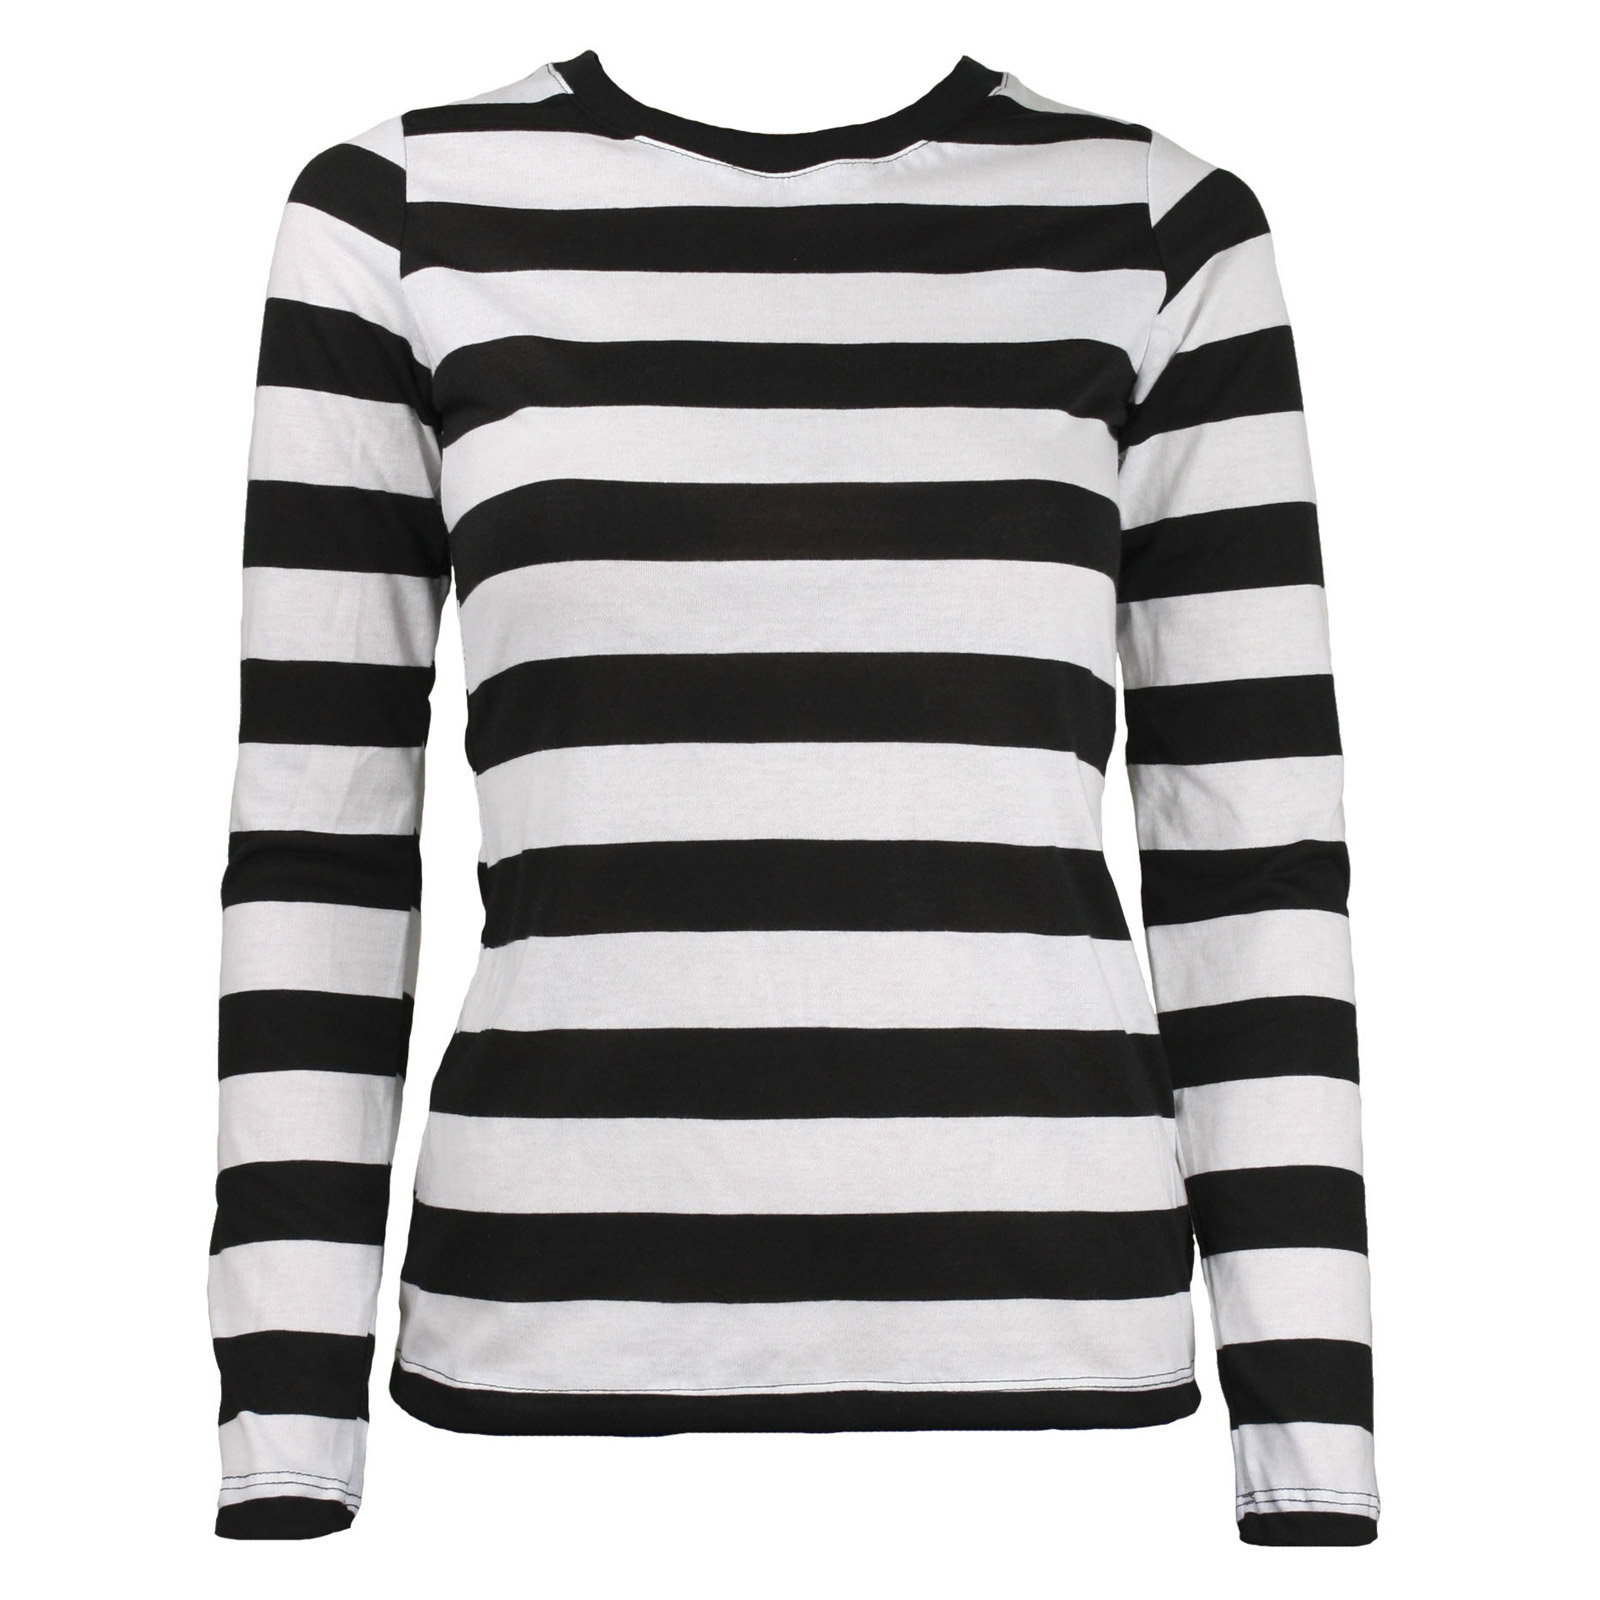 Long Sleeve Stripe Striped Shirt Black White Women's XS S M L XL XXL | eBay